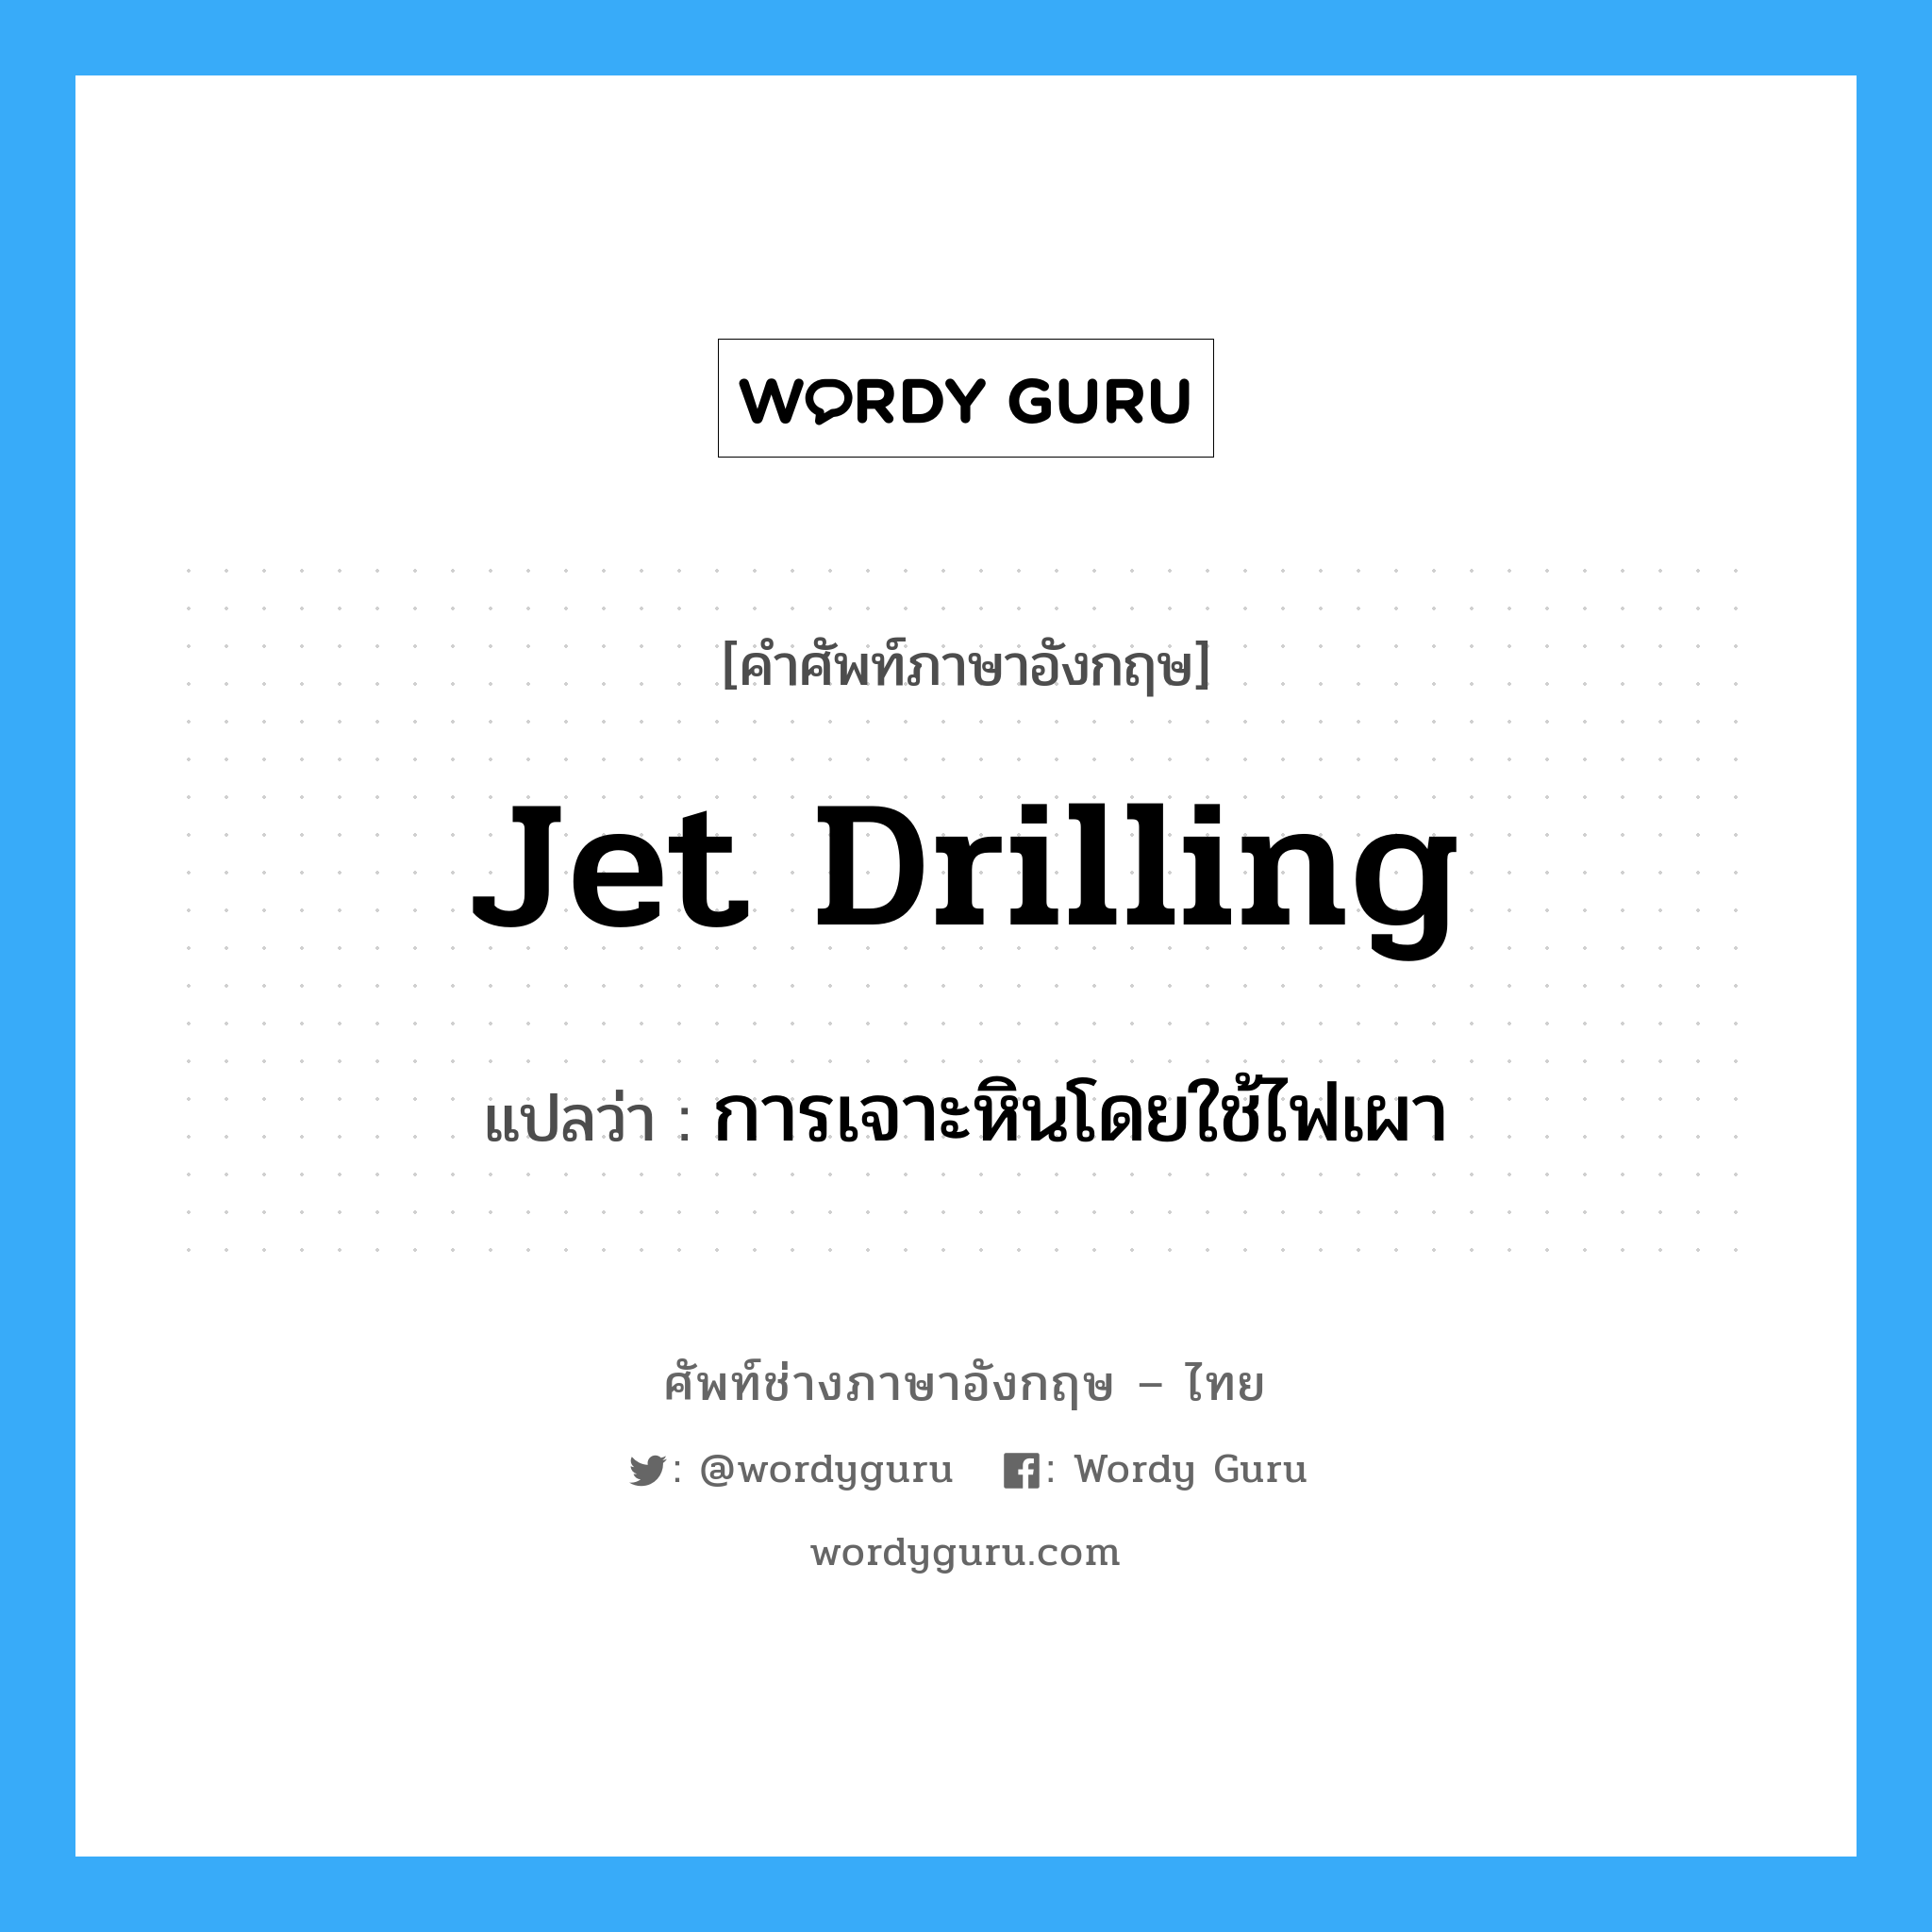 jet drilling แปลว่า?, คำศัพท์ช่างภาษาอังกฤษ - ไทย jet drilling คำศัพท์ภาษาอังกฤษ jet drilling แปลว่า การเจาะหินโดยใช้ไฟเผา